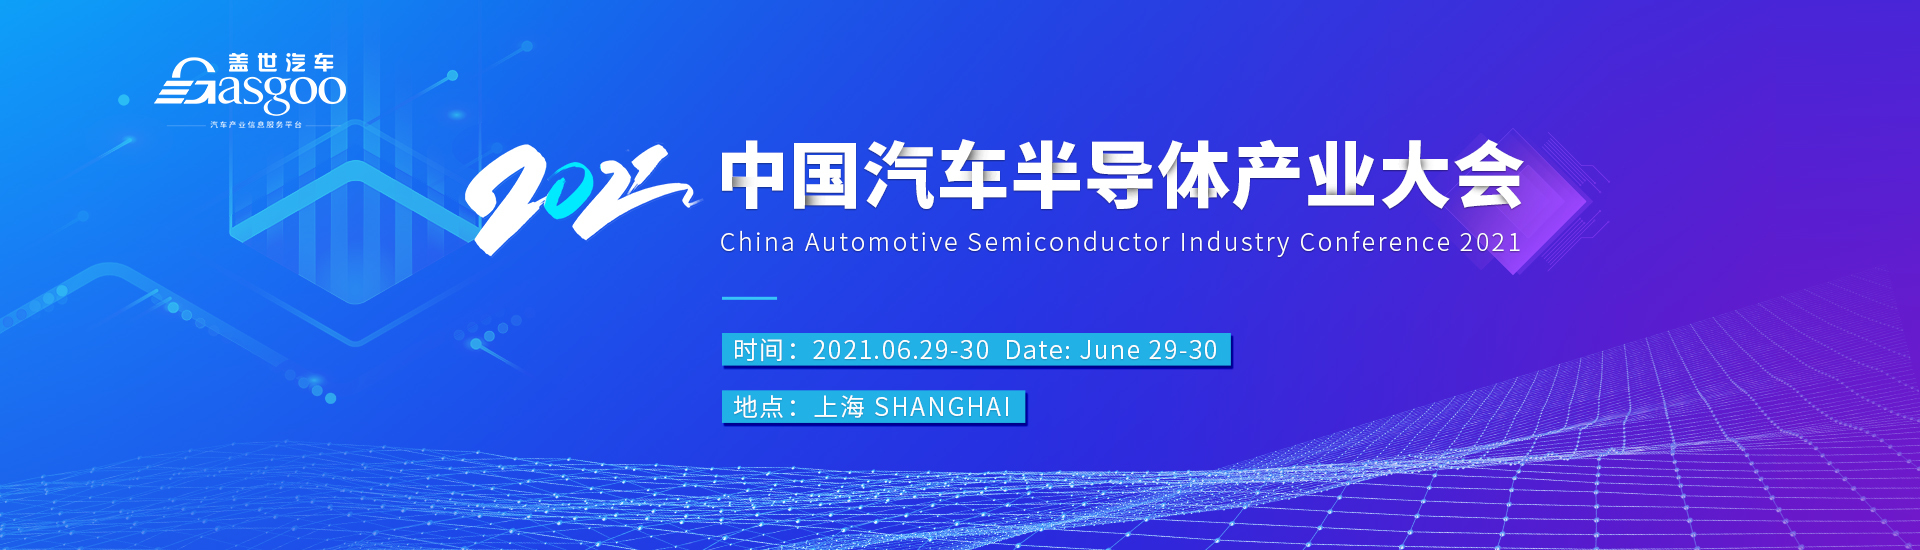 2021中国汽车半导体产业大会